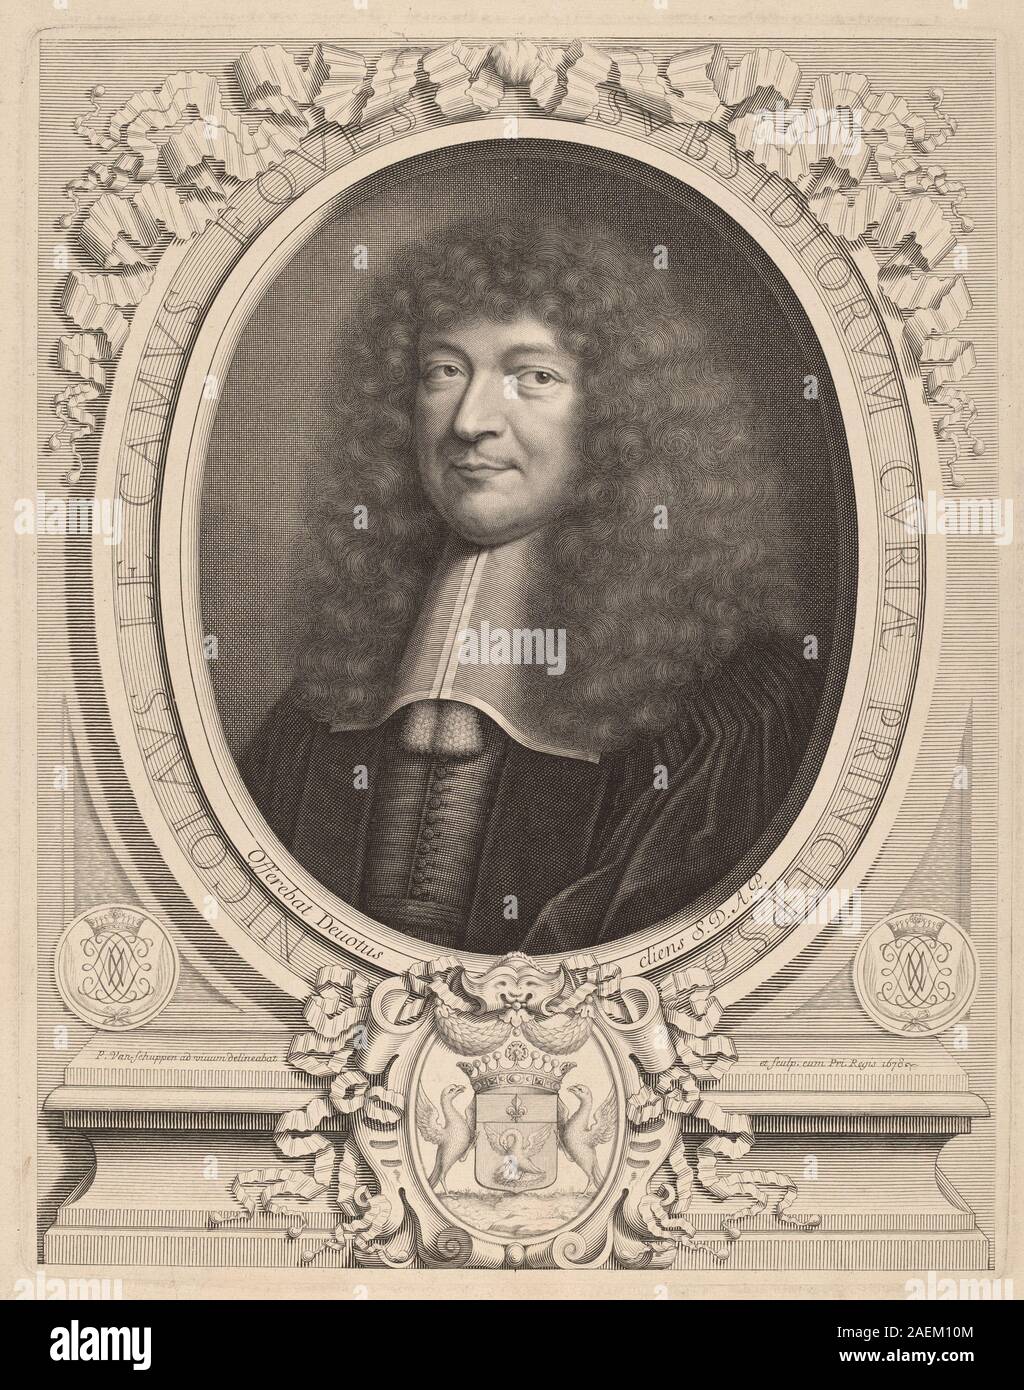 Peter Ludwig van Schuppen after Pieter van Mol, Nicolas Le Camus, 1678 Nicolas Le Camus; 1678date Stock Photo